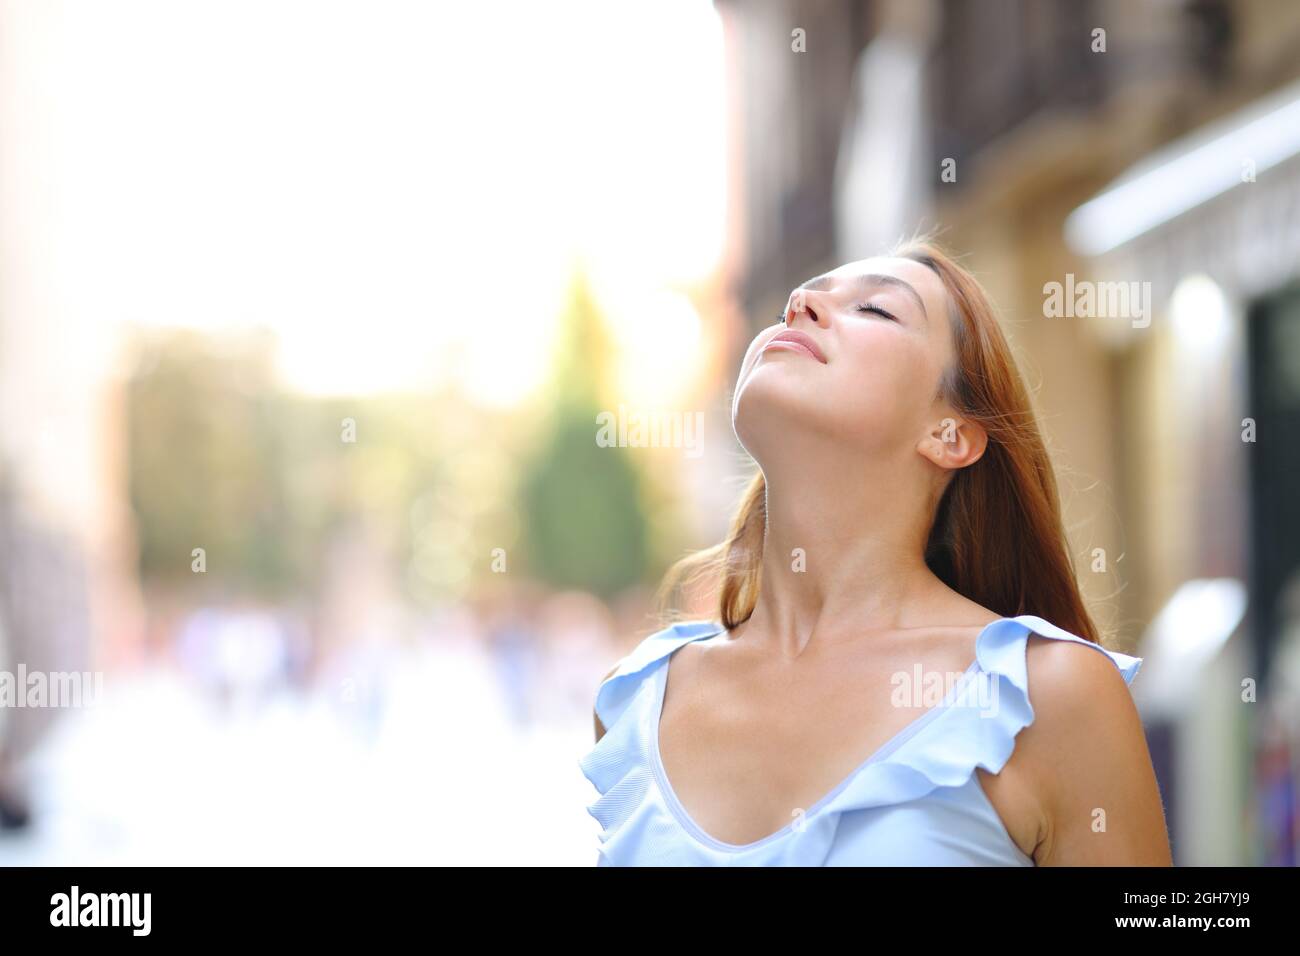 Una mujer relajada está respirando aire fresco en la calle Foto de stock